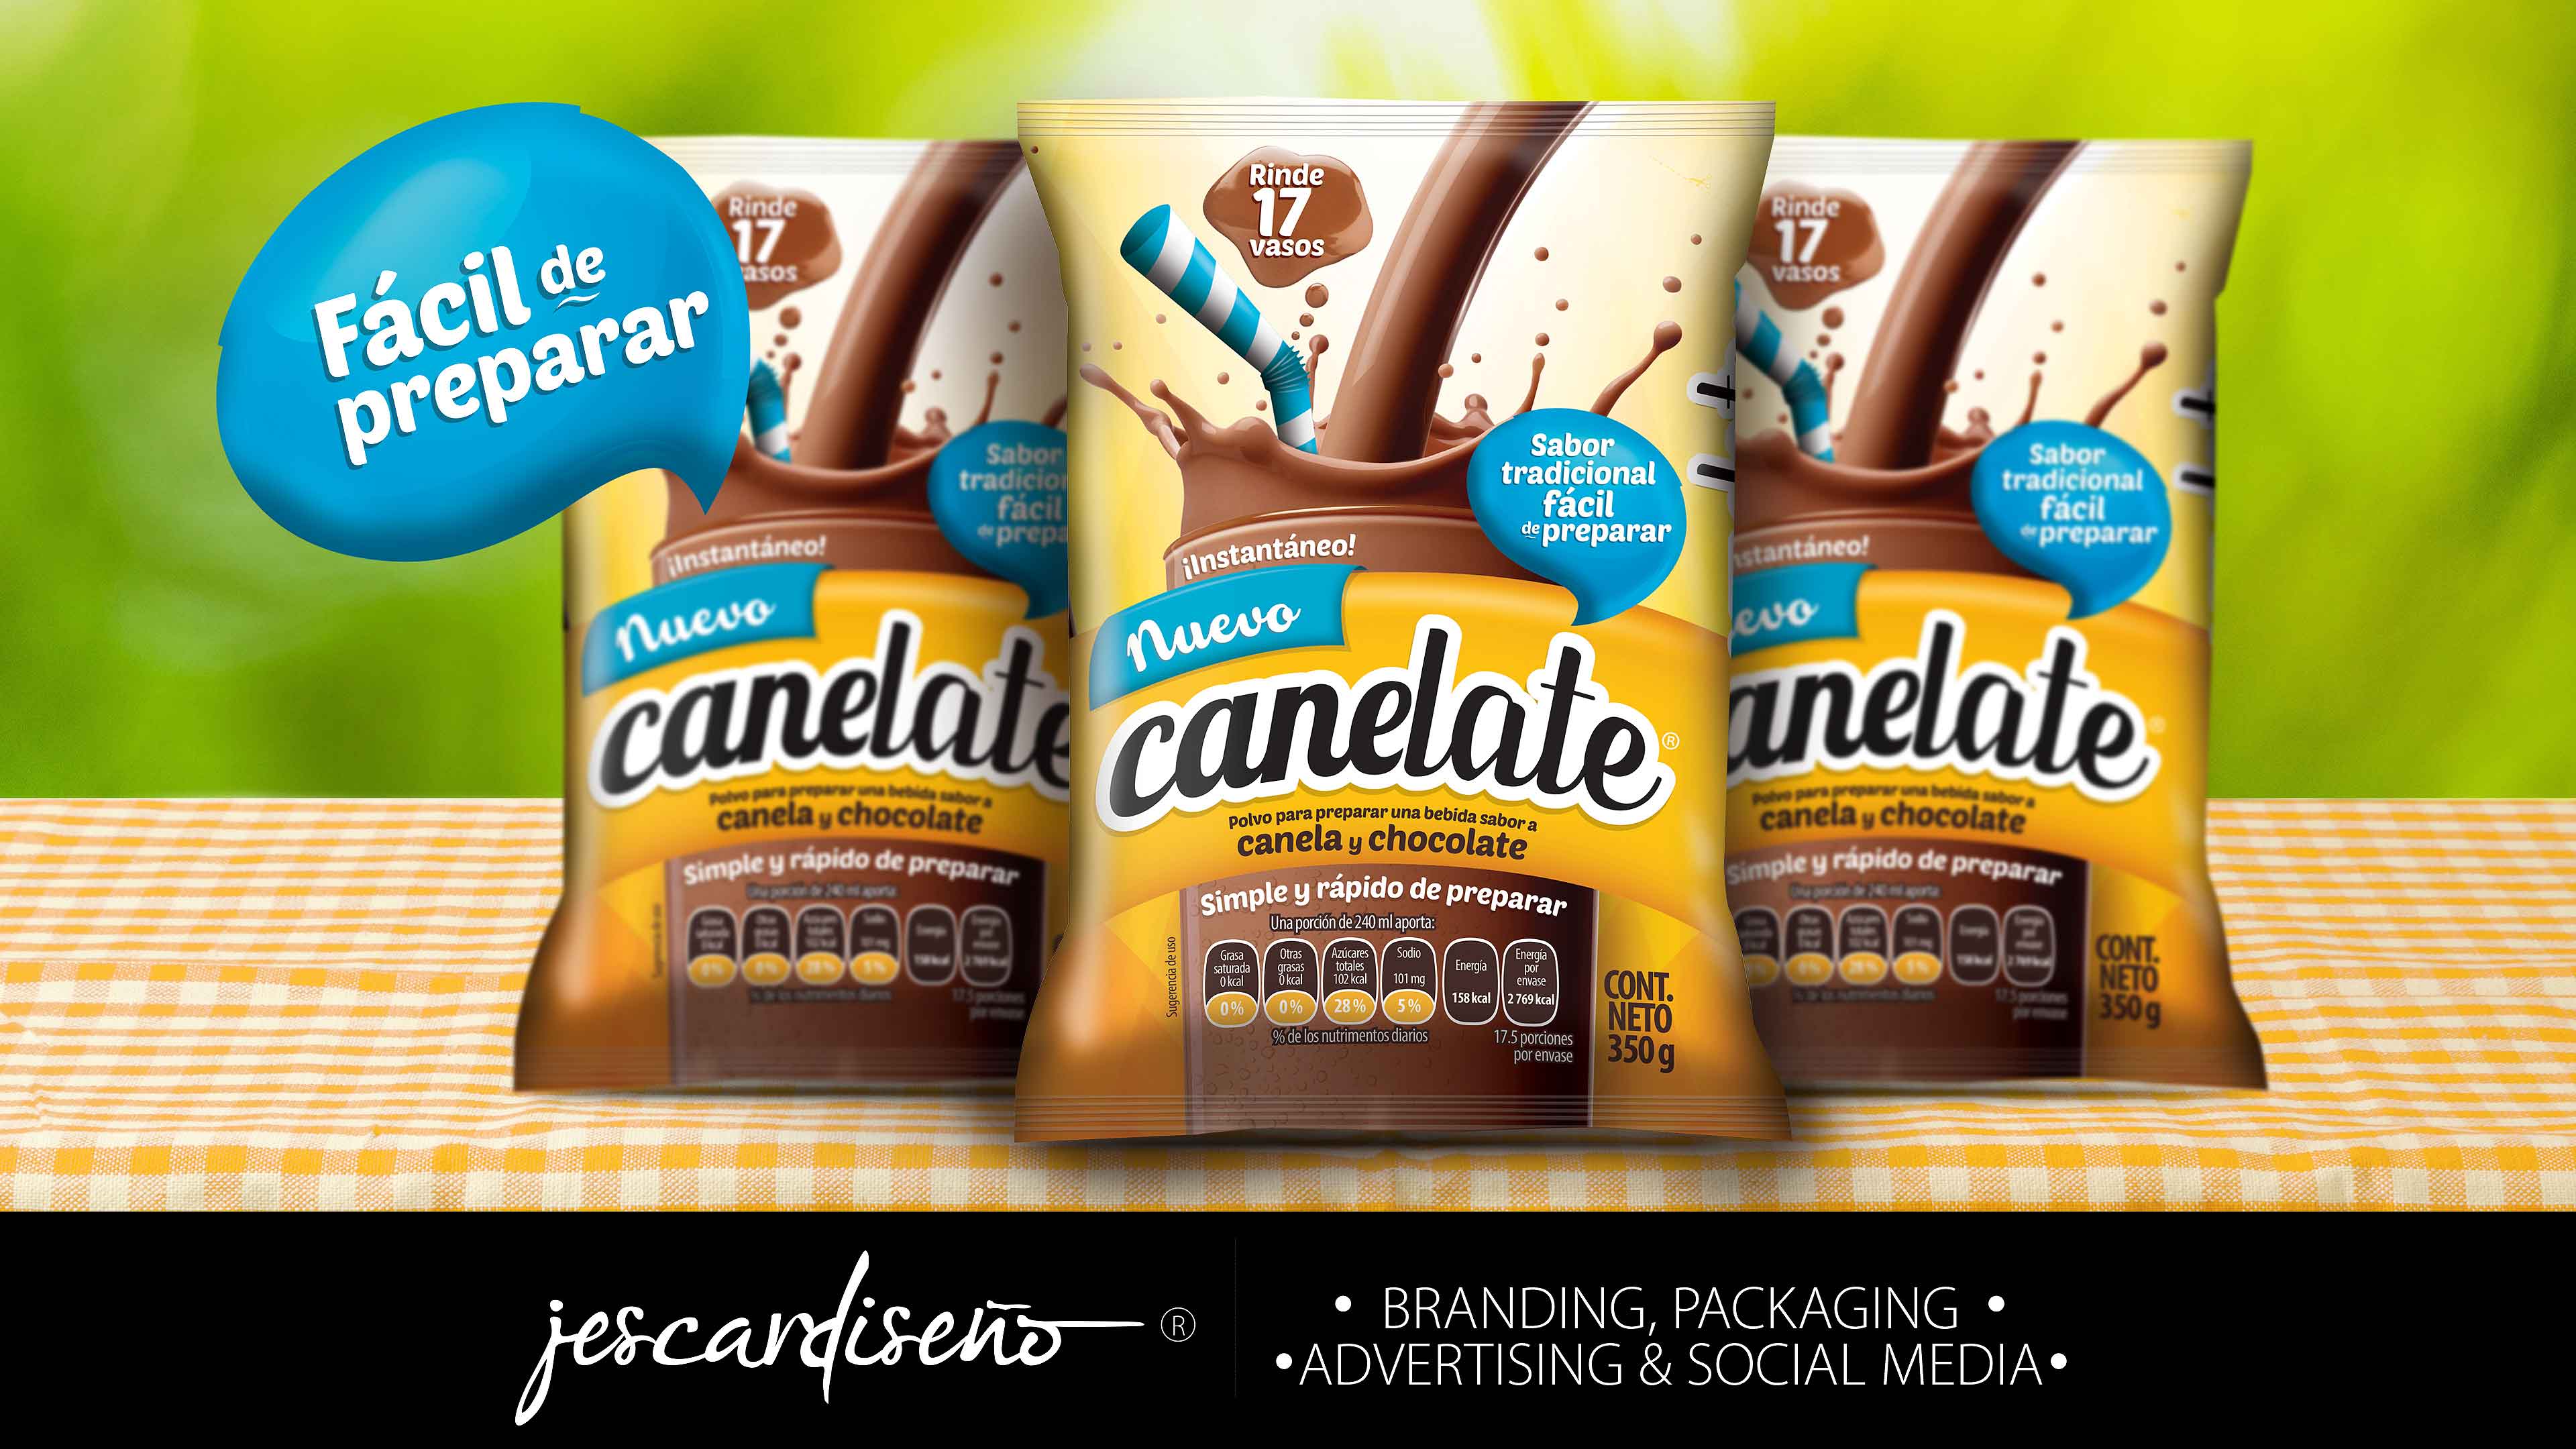 canelate packaging branding jescardiseno v4